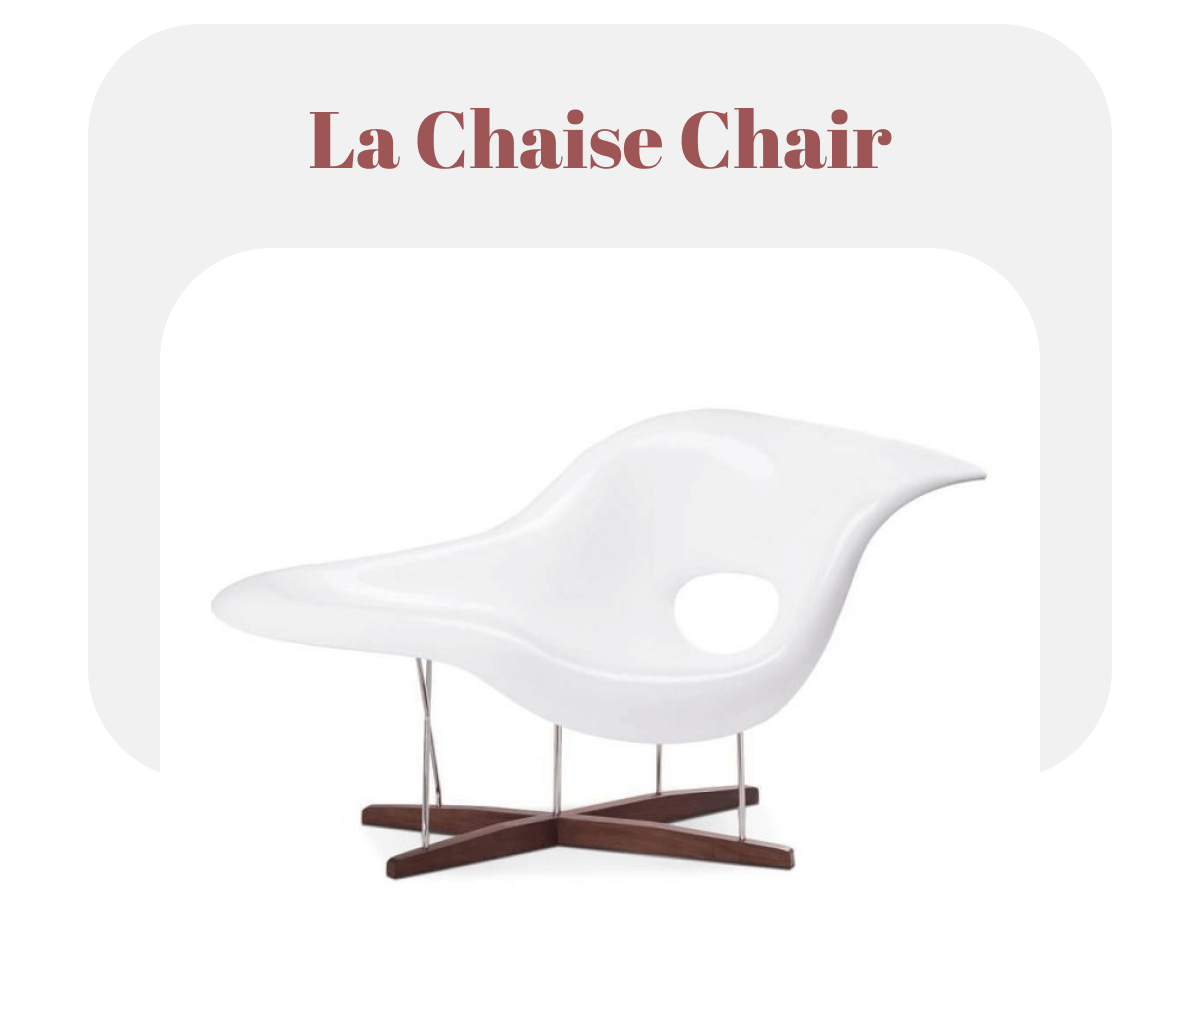 La Chaise Chair